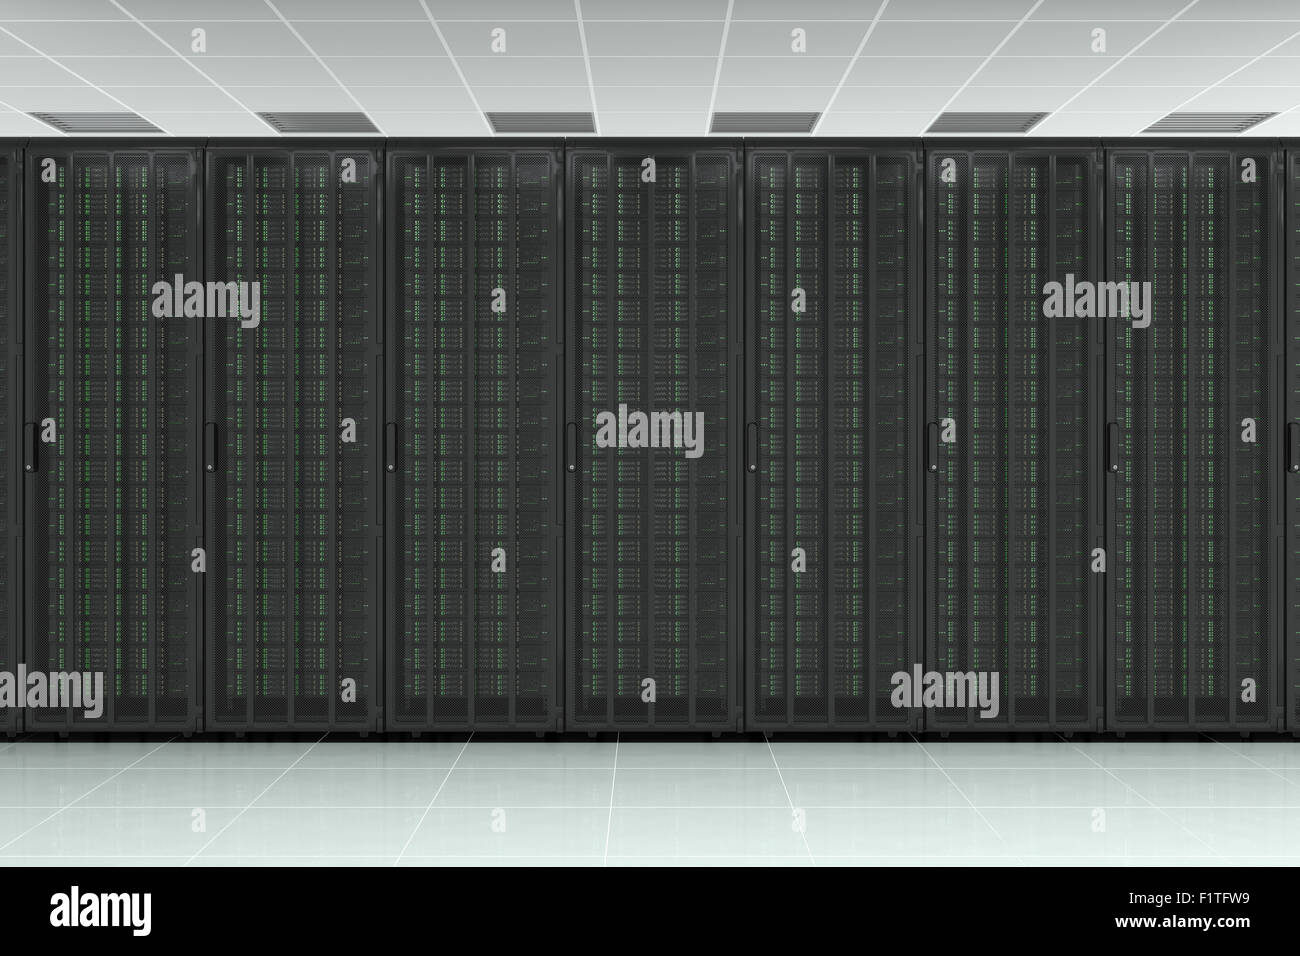 Netzwerk Server rohe Wand mit Computern für digital tv, Daten, Kommunikation und internet Stockfoto